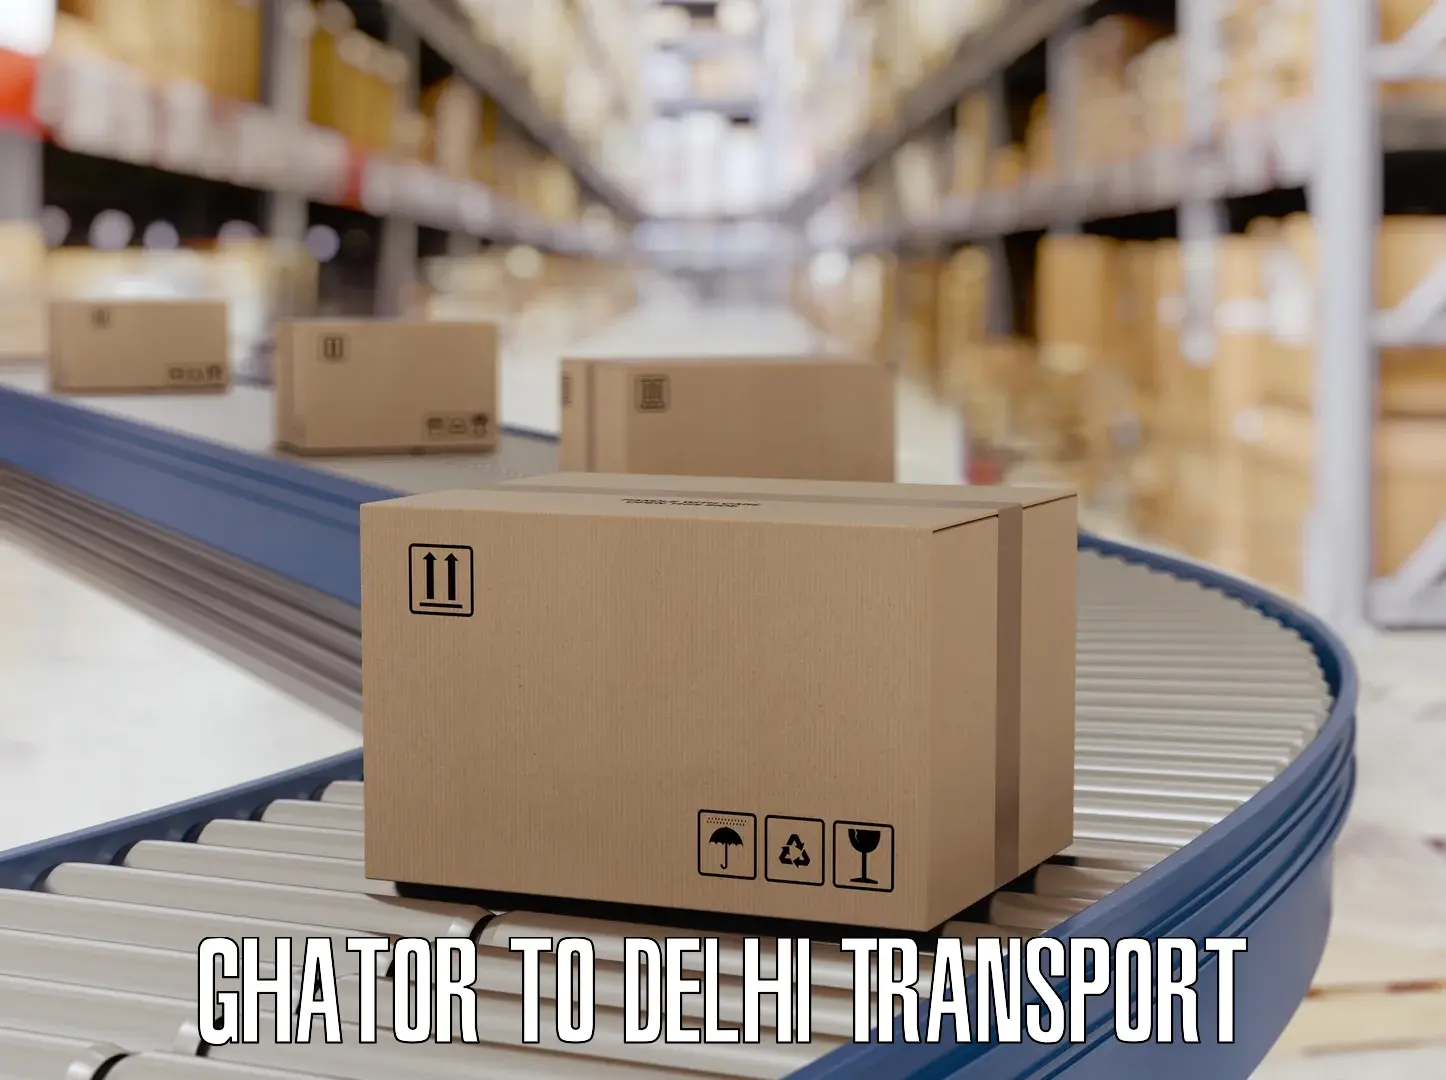 Online transport service Ghator to Ashok Vihar